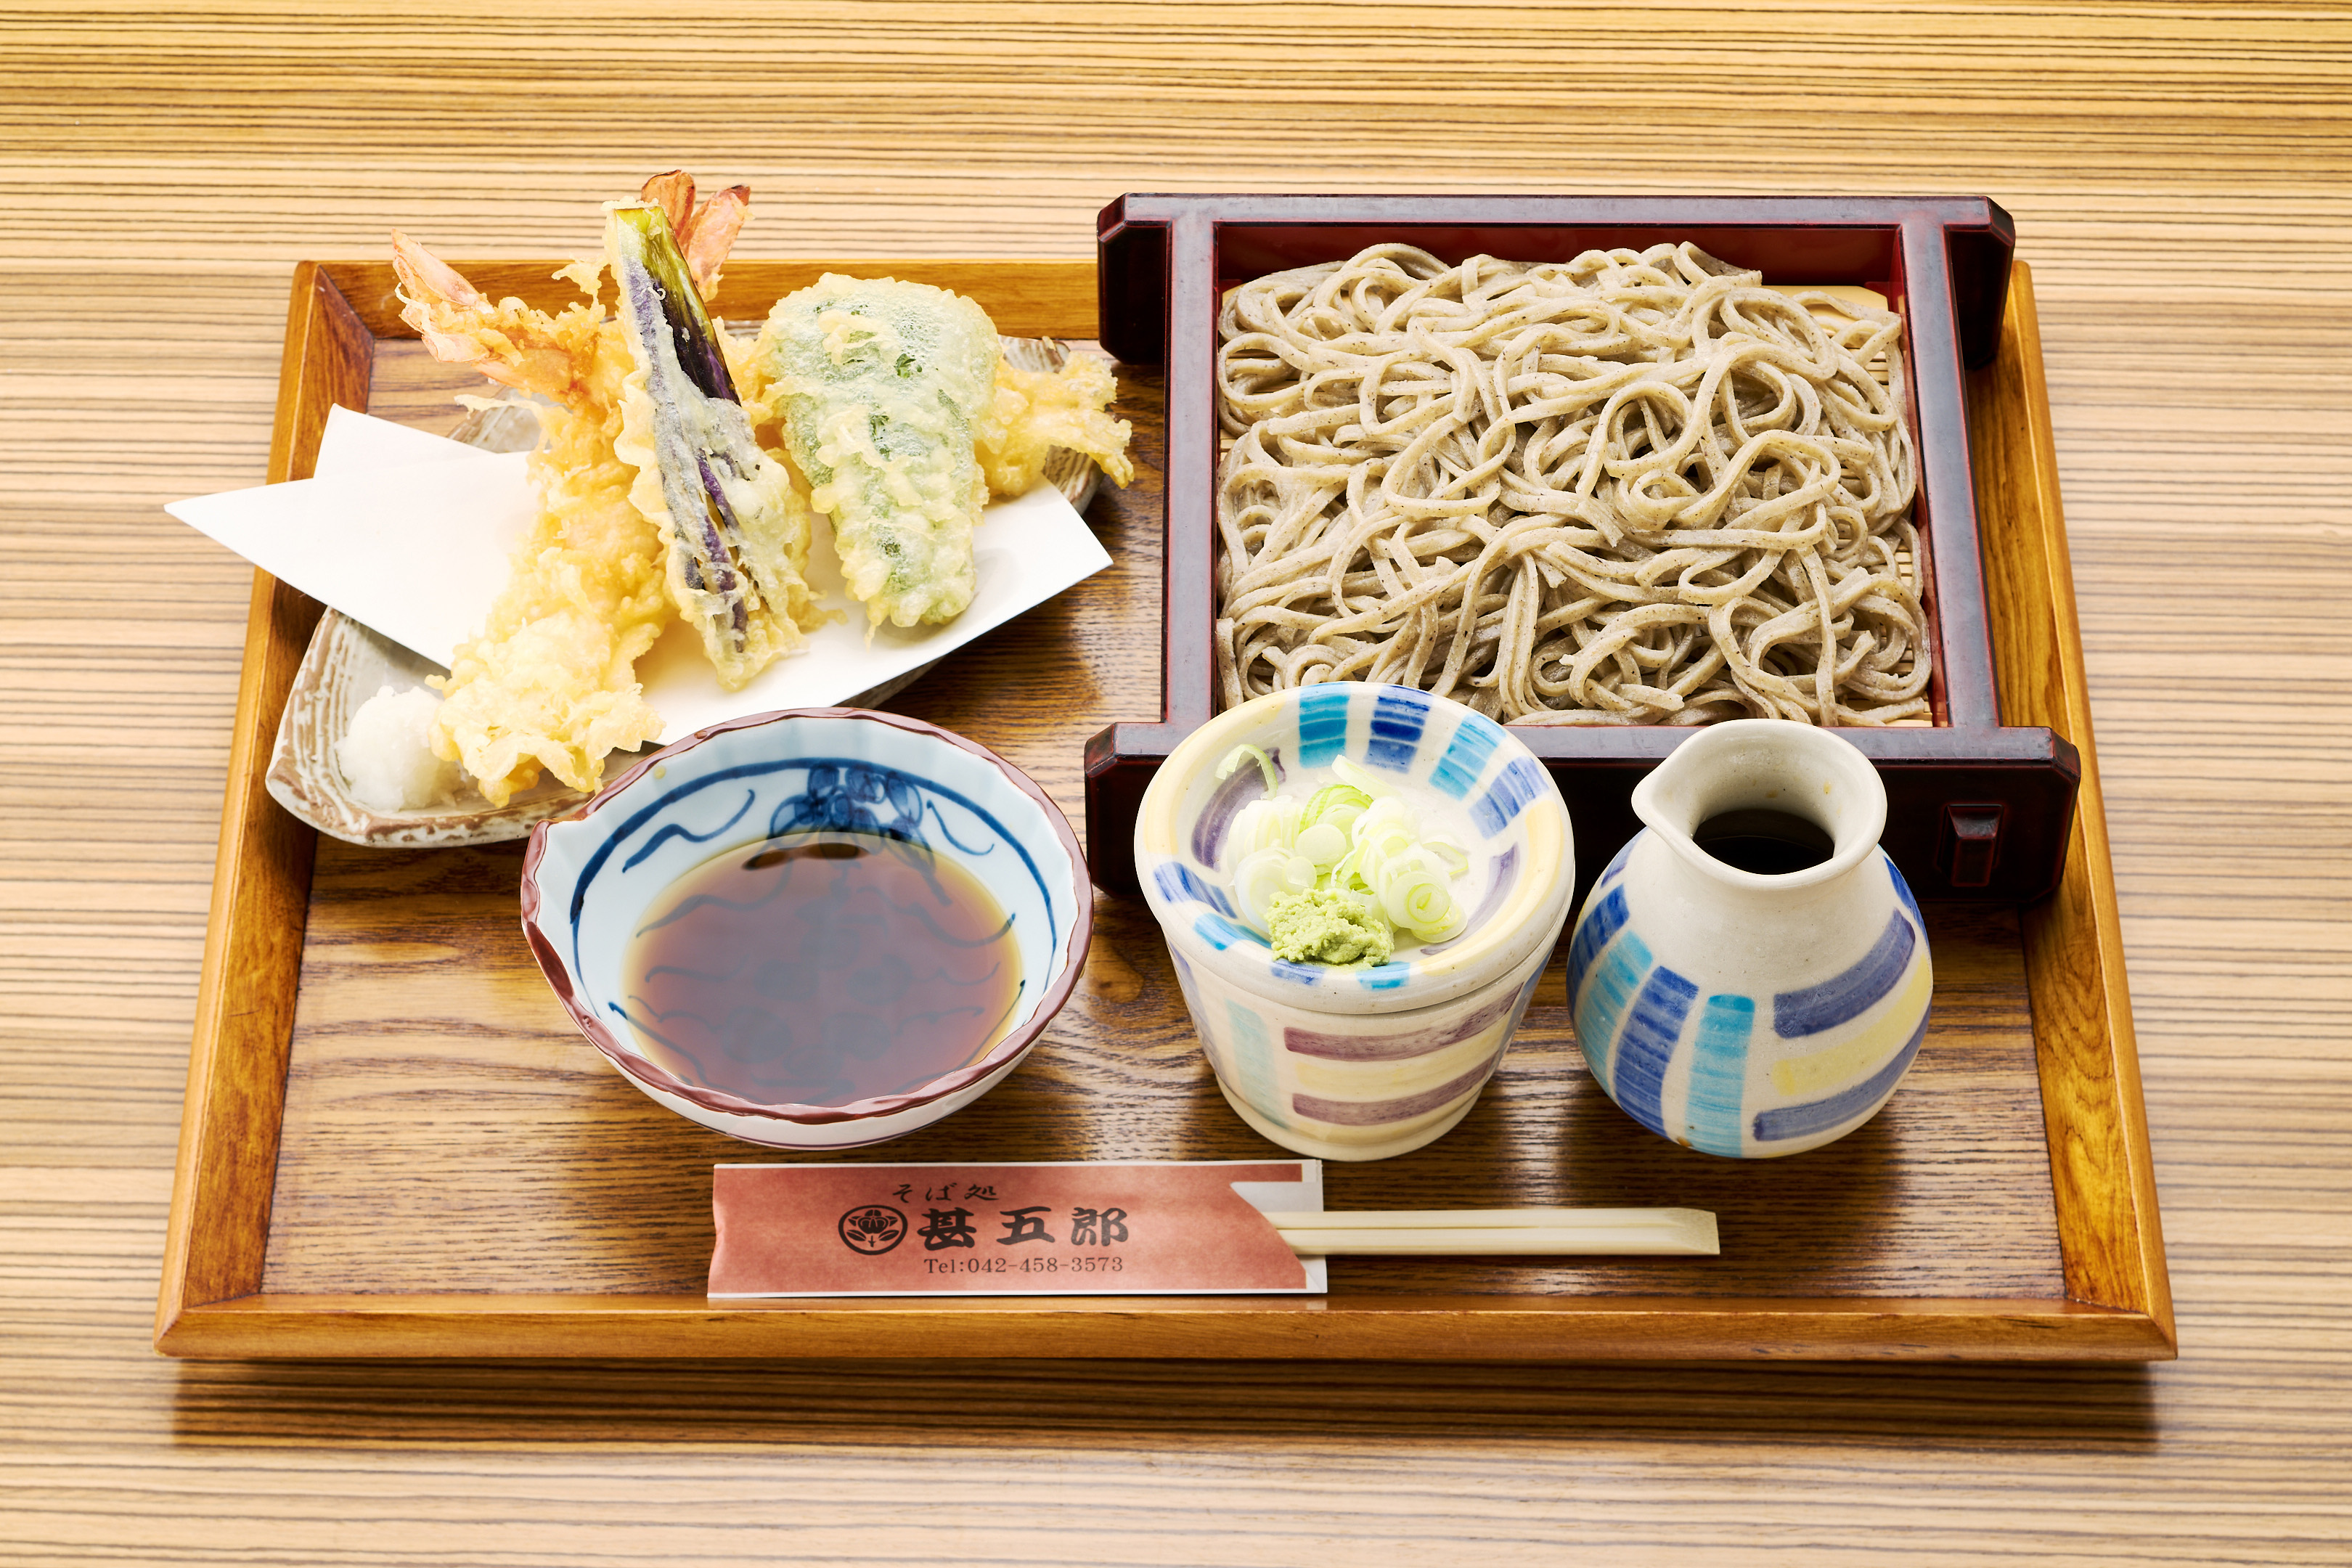 香り豊かなこだわり蕎麦とサクサク衣の天ぷらが楽しめる『天せいろ』